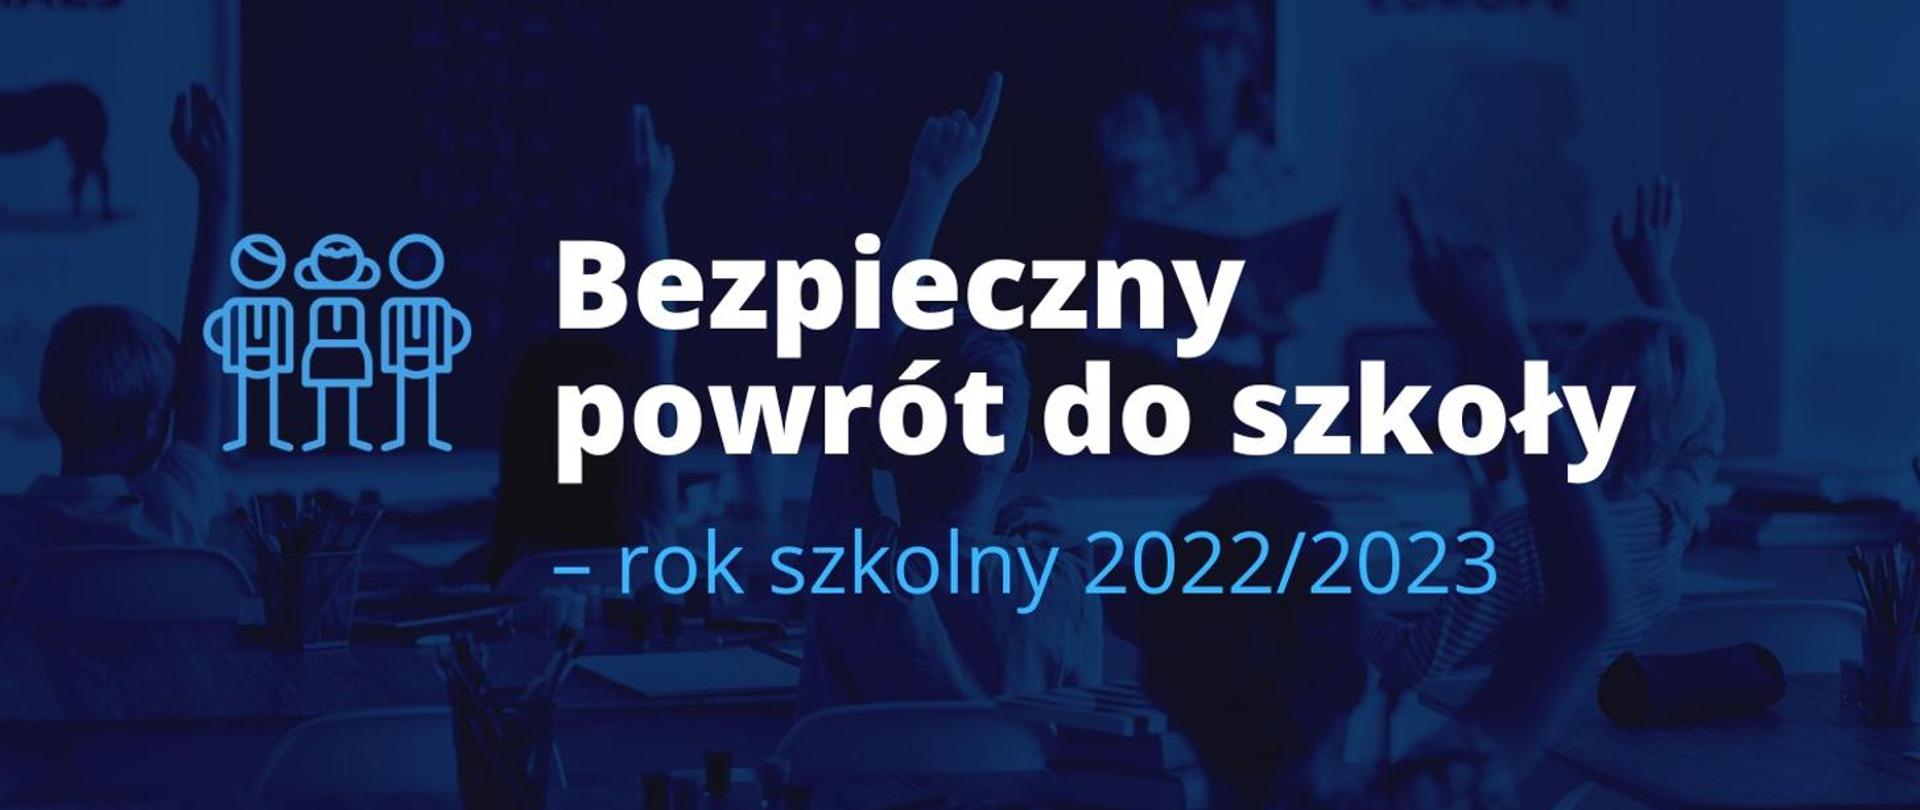 Banner w kolorze granatowym pt. "Bezpieczny powrót do szkoły" - rok szkolny 2022/2023 